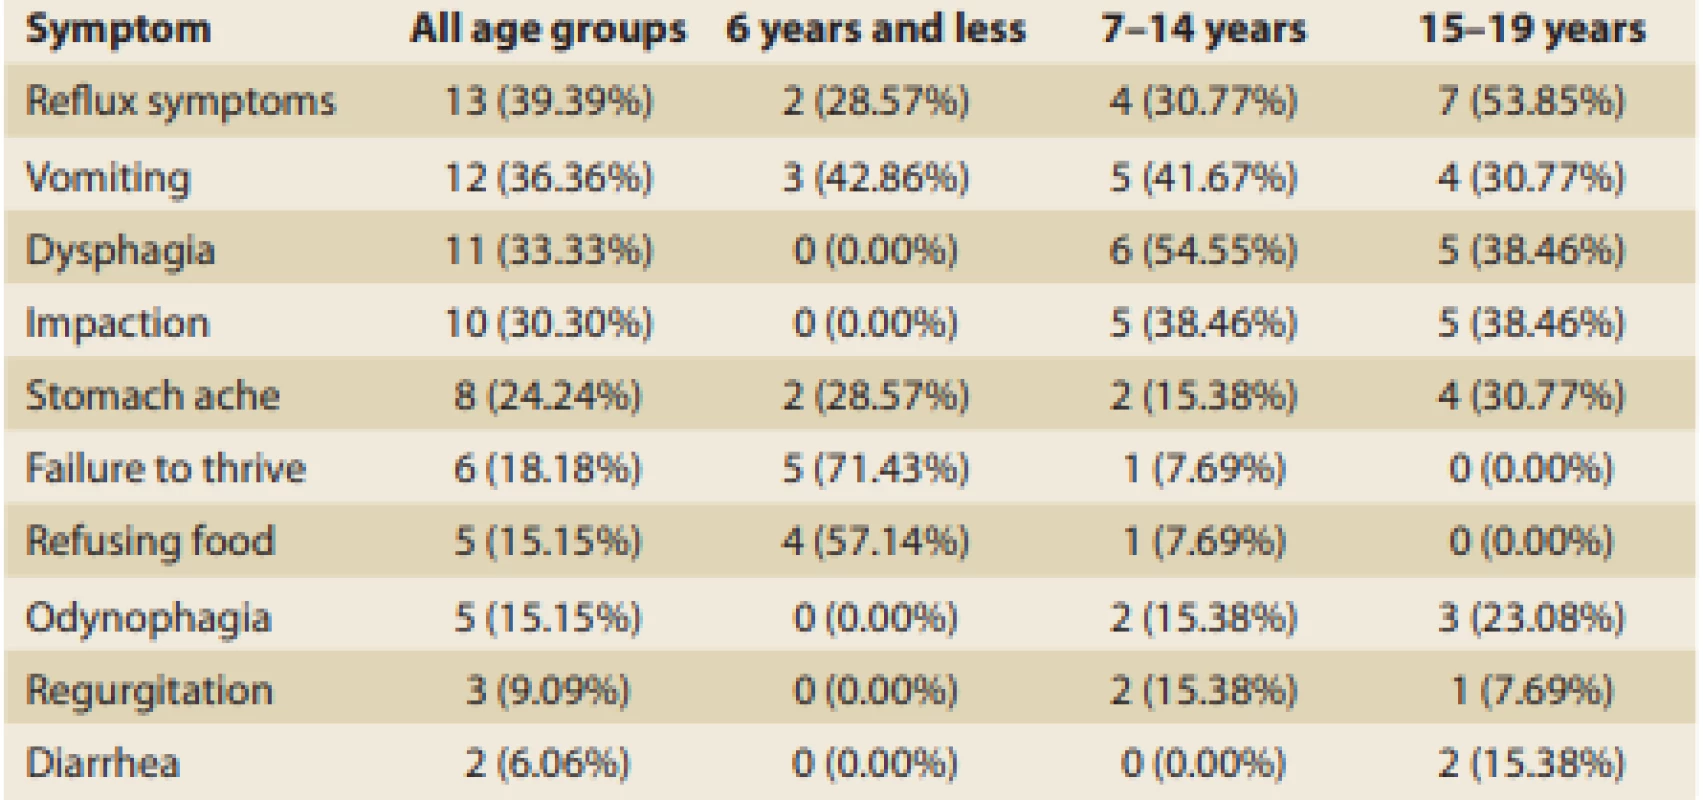 Occurrence of clinical symptoms according to the children’s ages.<br>
Tab. 3. Výskyt klinických příznaku podle věku pacientů.